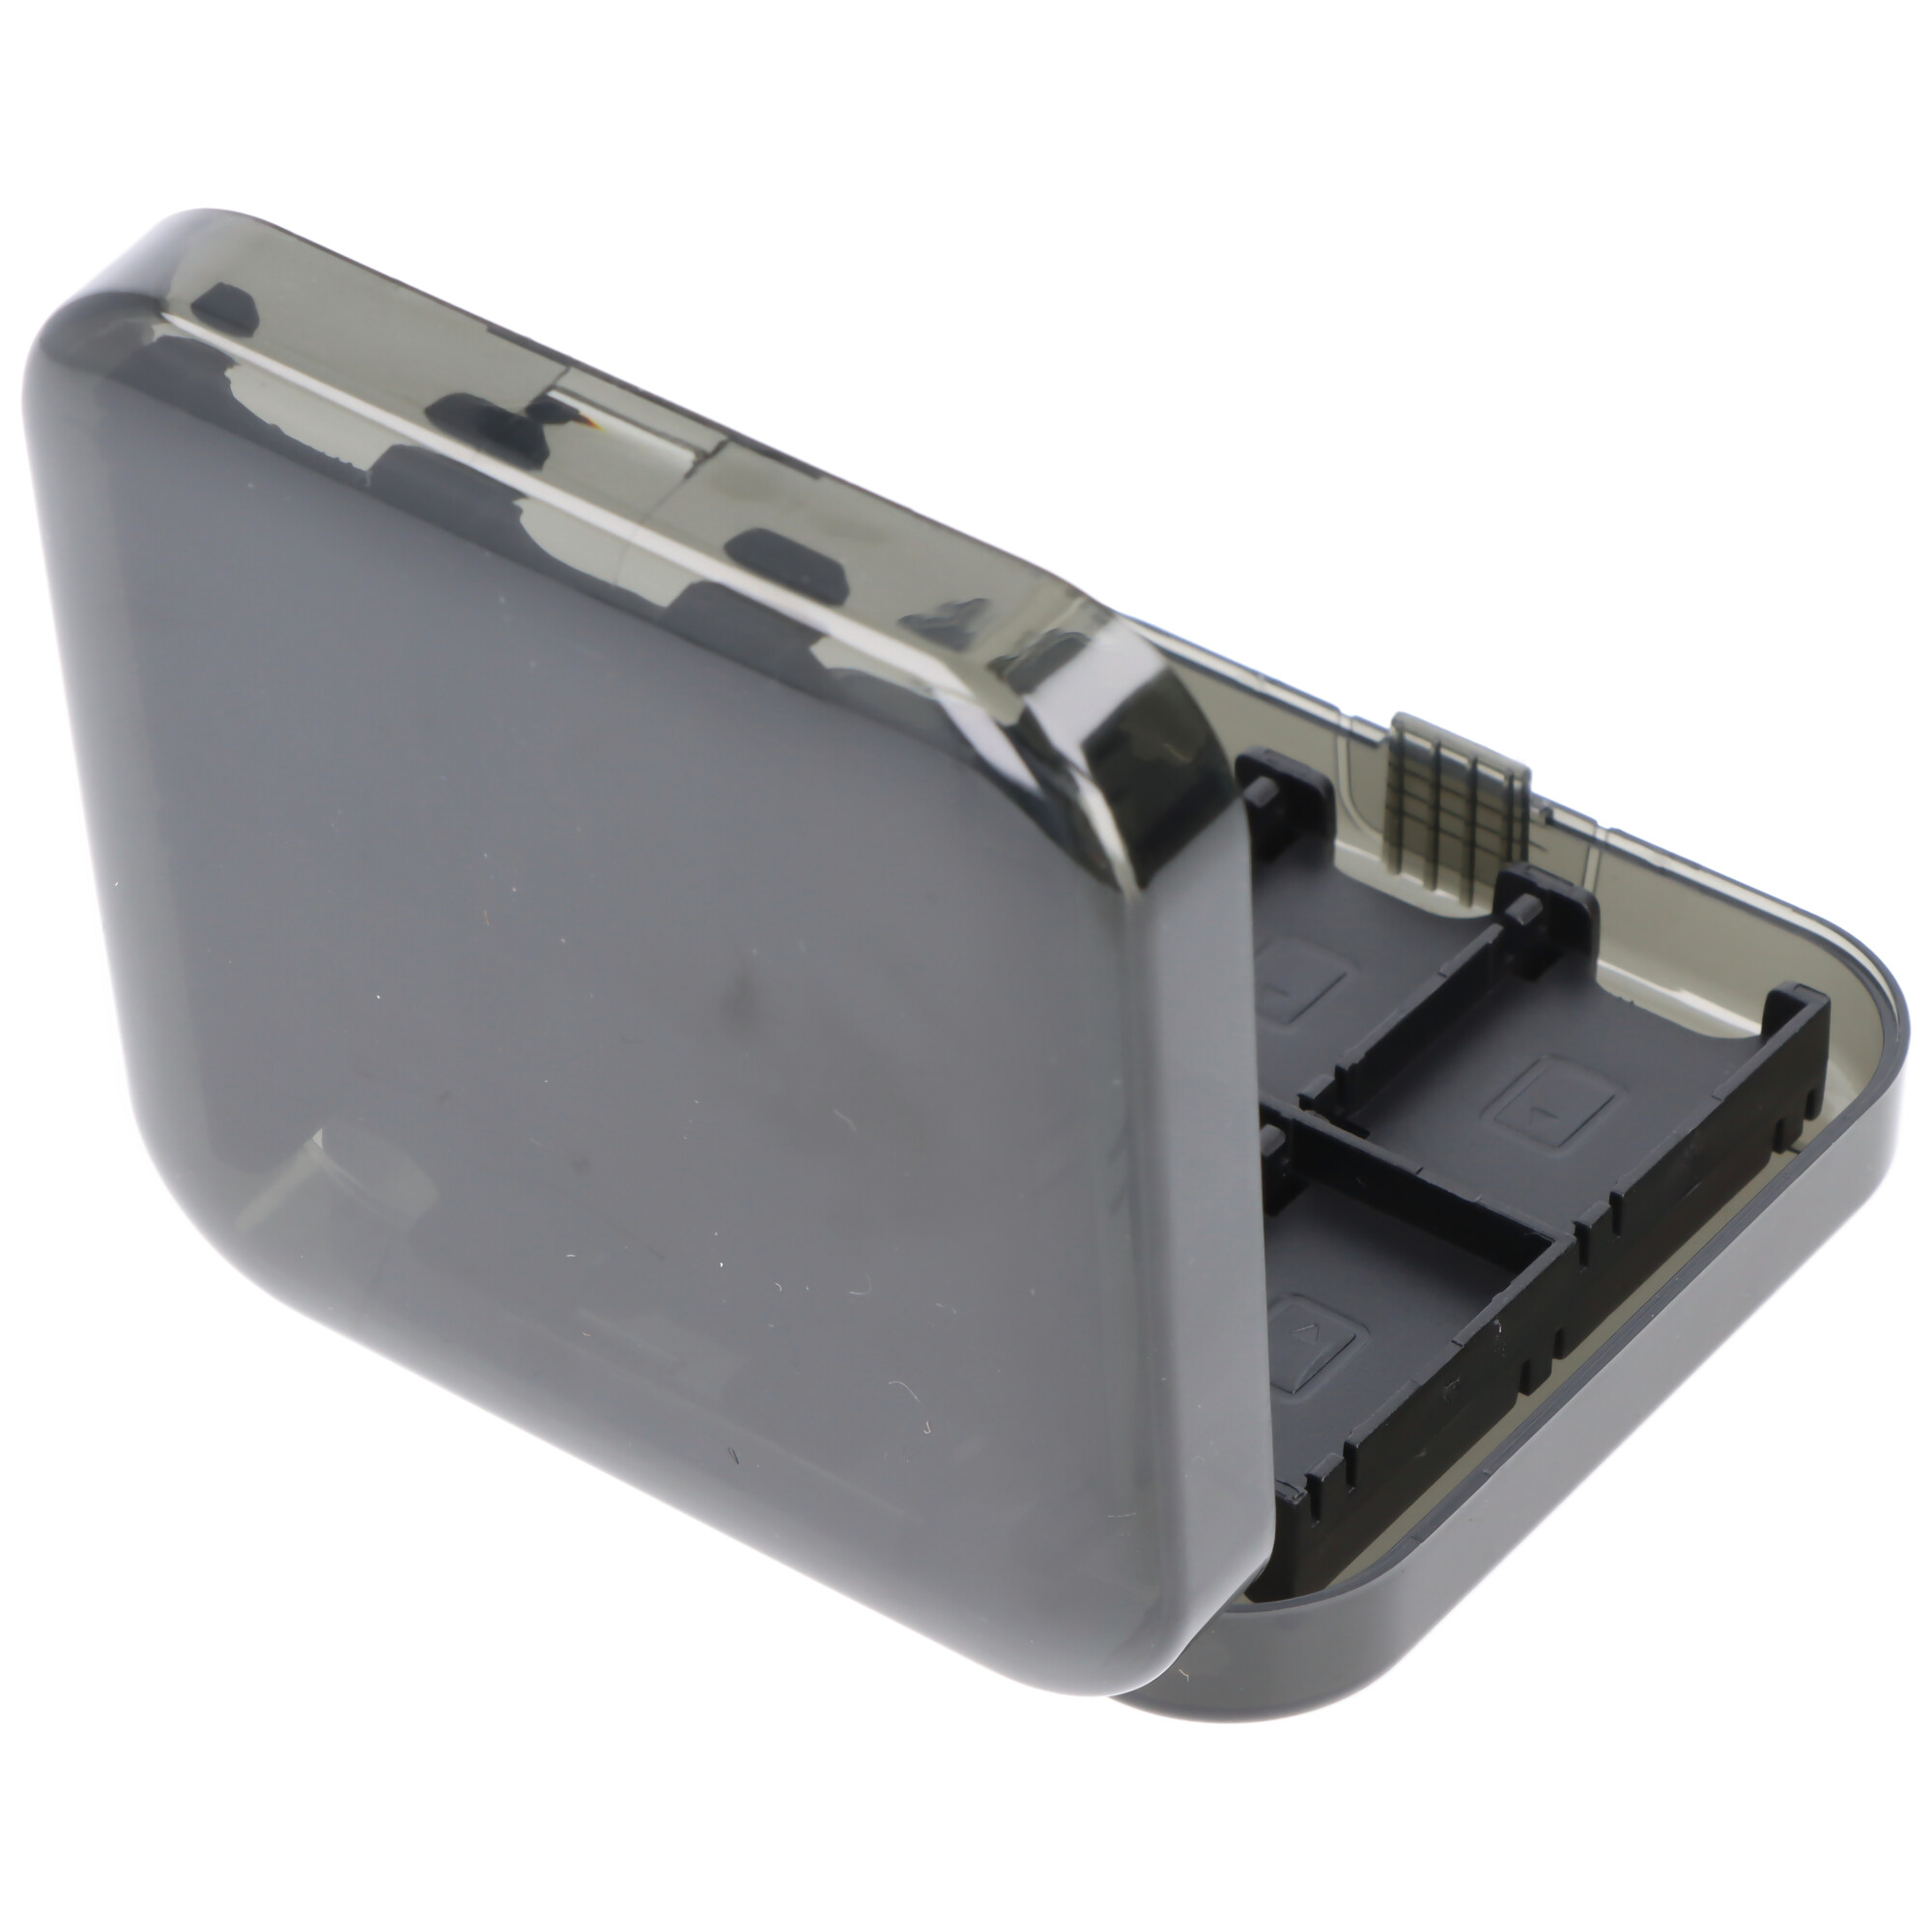 Aufbewahrungsbox ideal passend für Nintendo Switch Spiele, Schutzhülle, Transportbox für Nintendo Switch Spielmodule